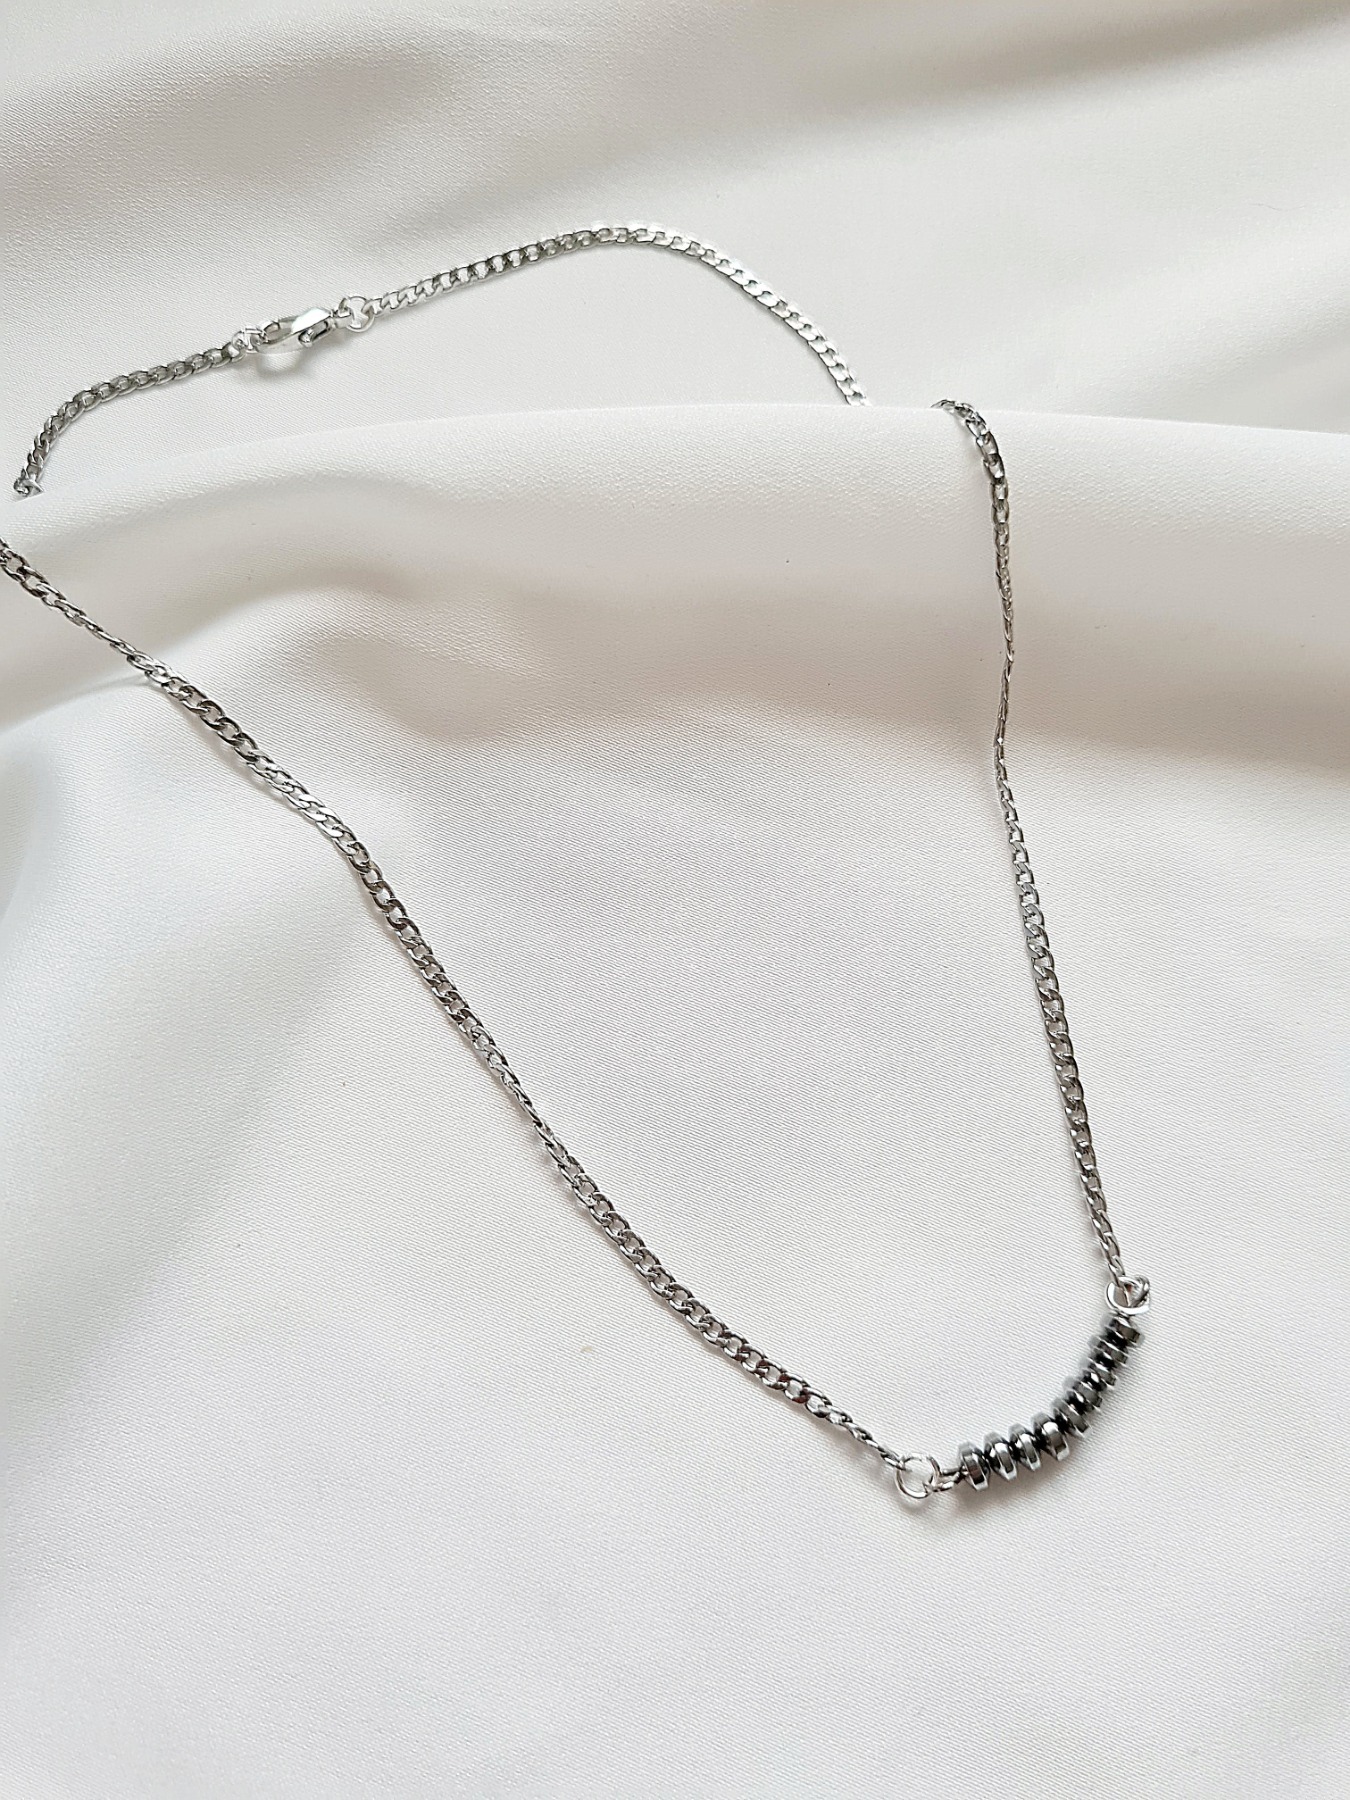 Hämatitperlen Halskette Gliederkette silberne Halskette 8